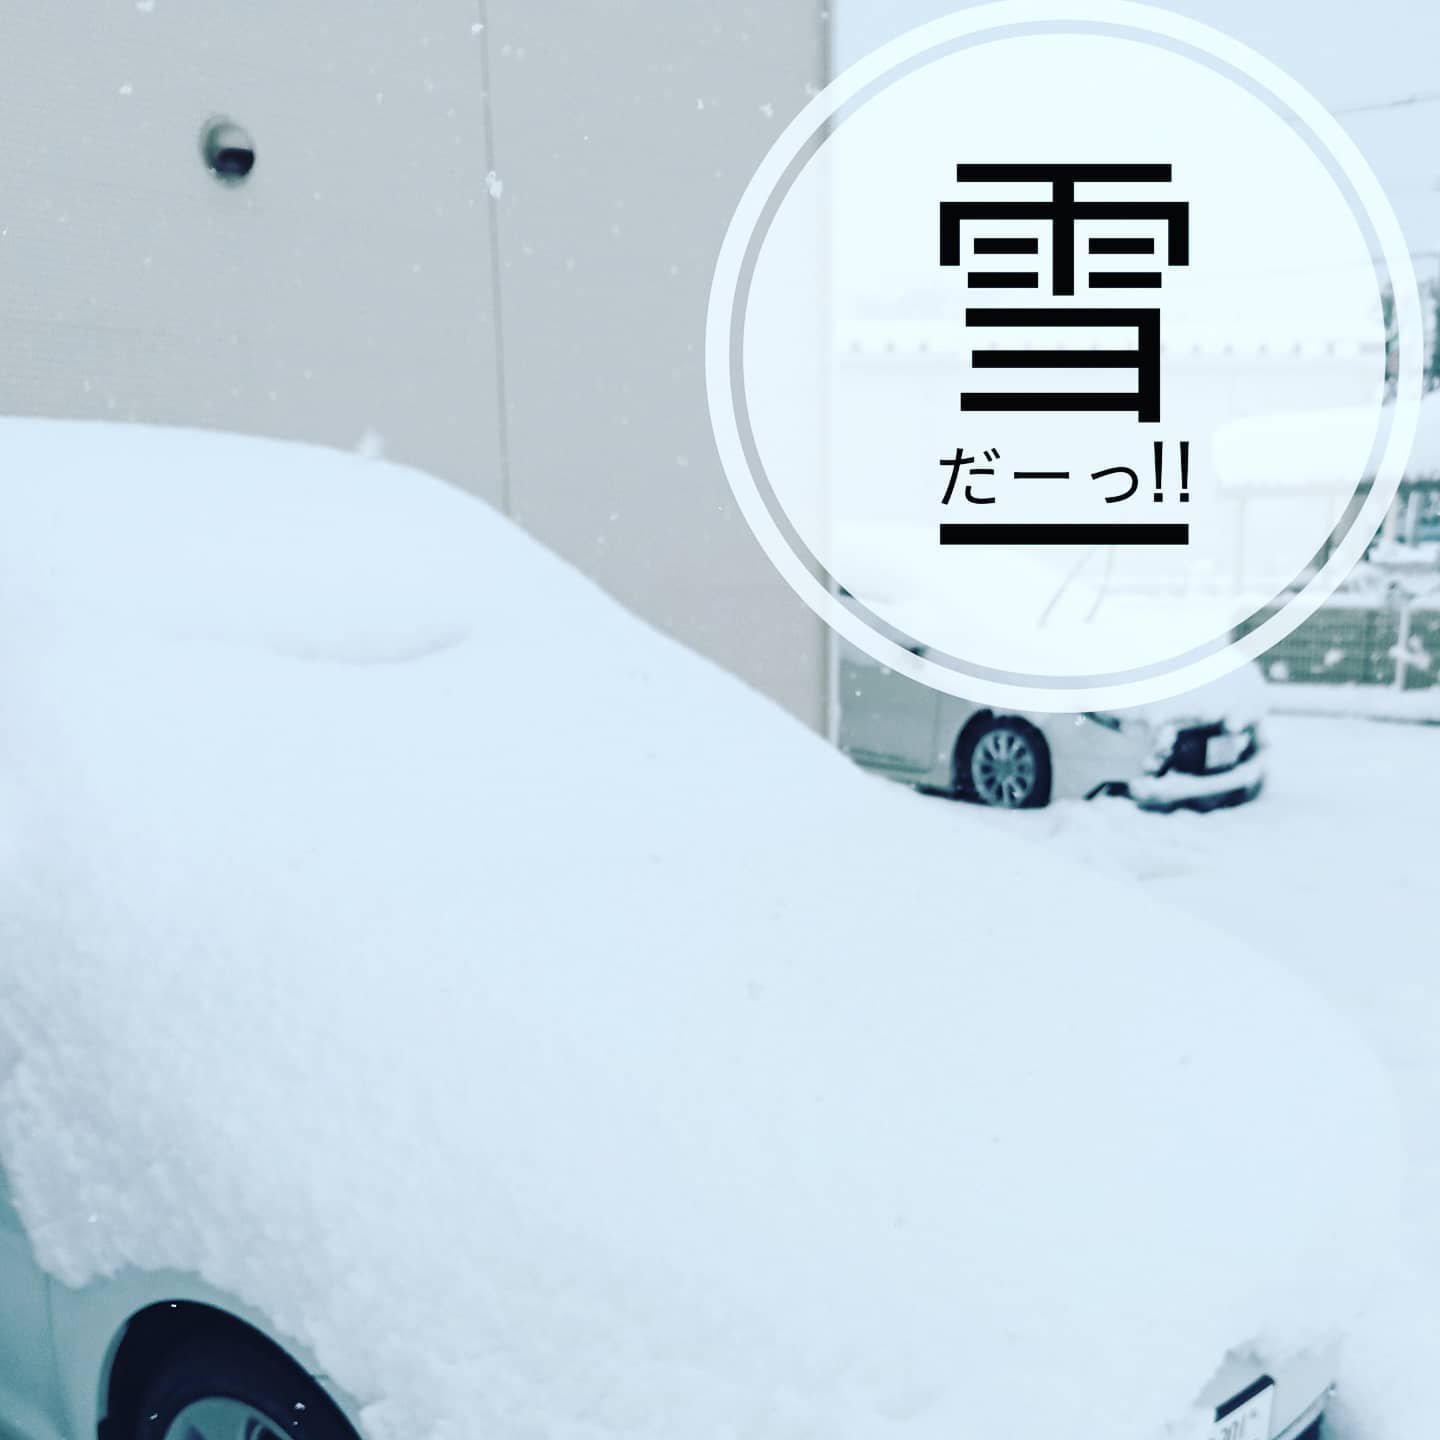 【子ども心がよみがえる！】一面、雪の世界。冬将軍、雪かき、東京では知らなかった文化に触れられる。四季を楽しめるのは、地方移住の醍醐味ですね。わくわく。